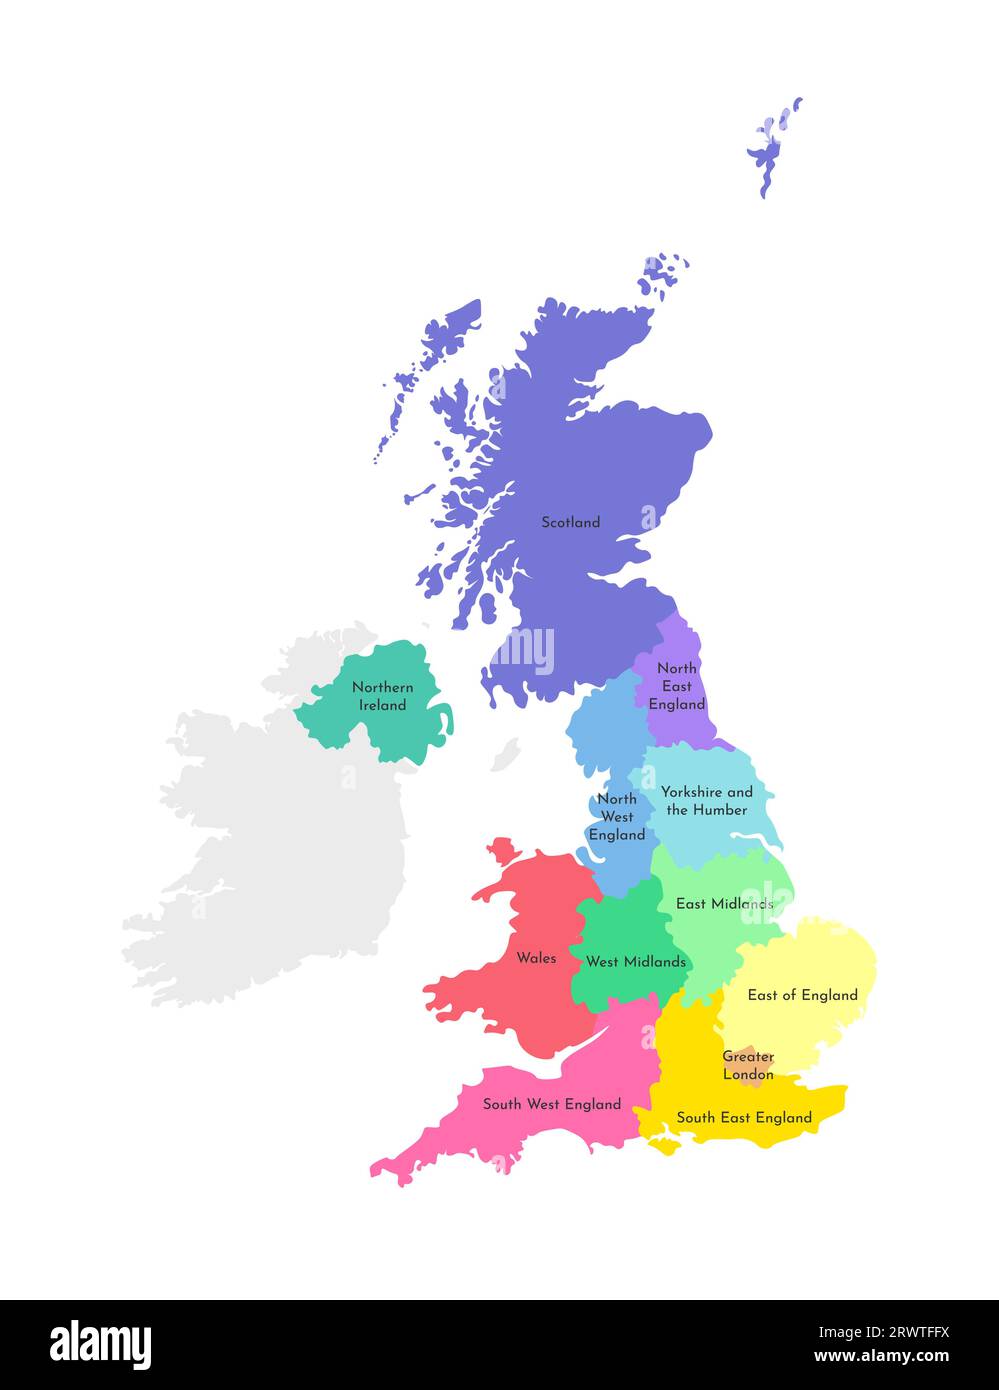 Illustration vectorielle isolée d'une carte administrative simplifiée du Royaume-Uni de Grande-Bretagne et d'Irlande du Nord. Bordures et noms des RE Illustration de Vecteur